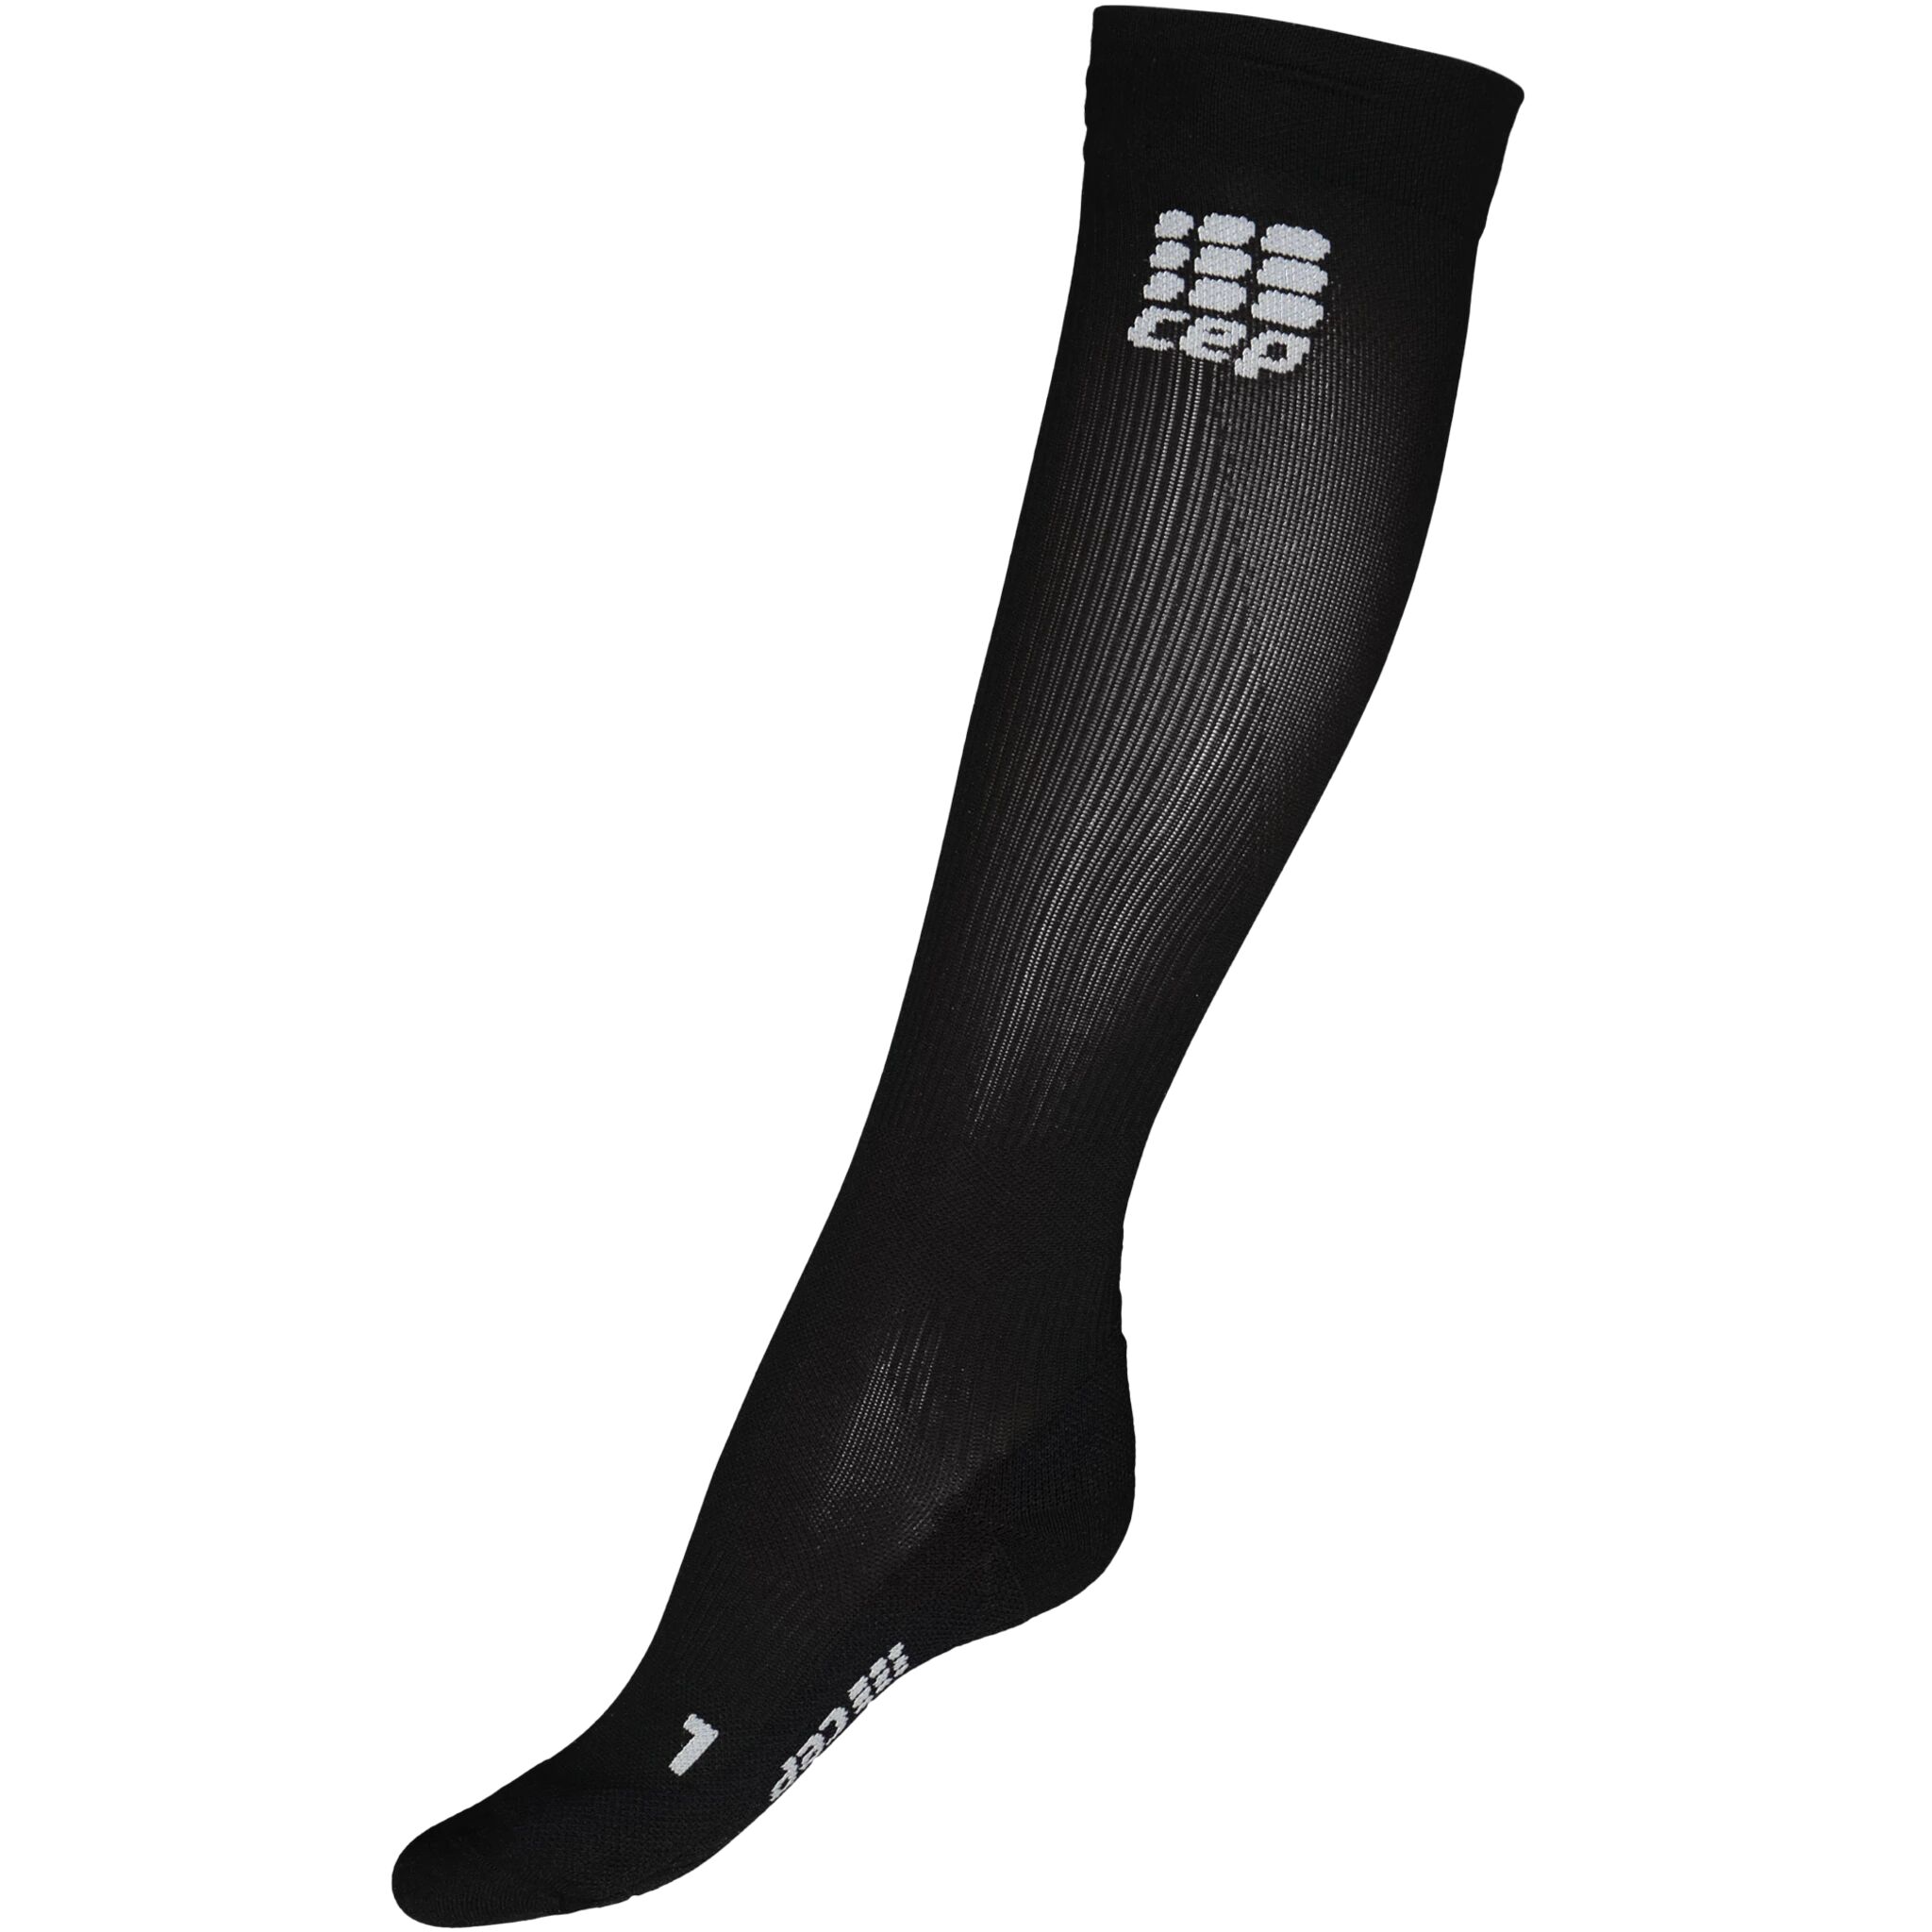 CEP pro+ run socks 2.0, kompresjonsstrømpe dame II Black